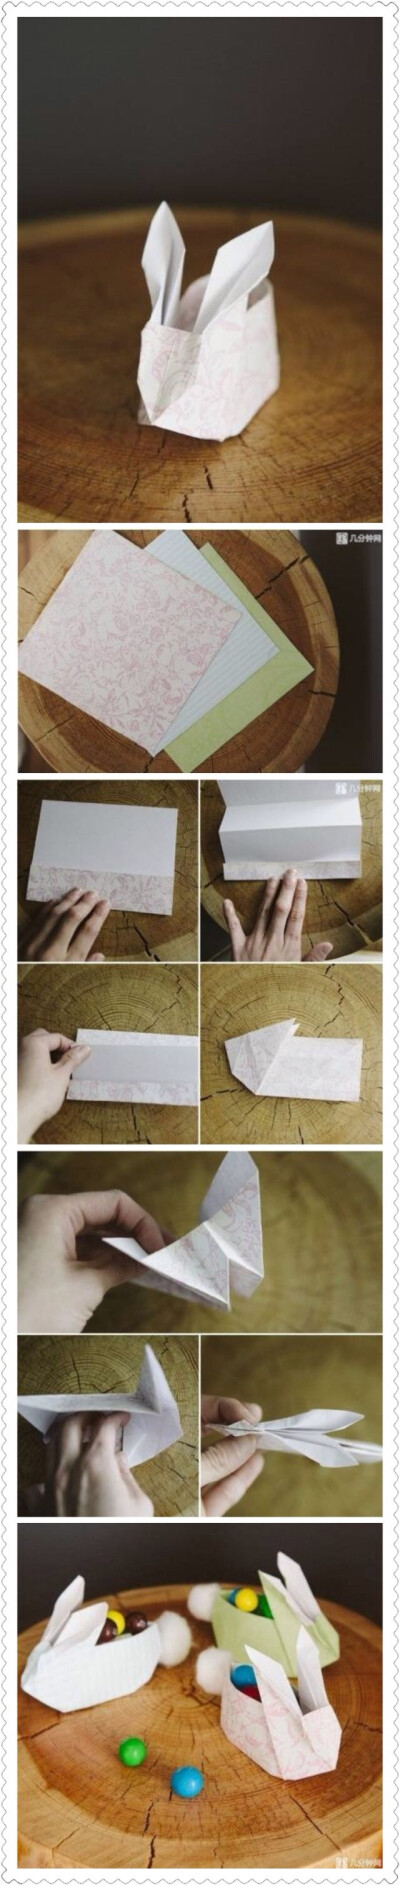 折纸小兔子的做法